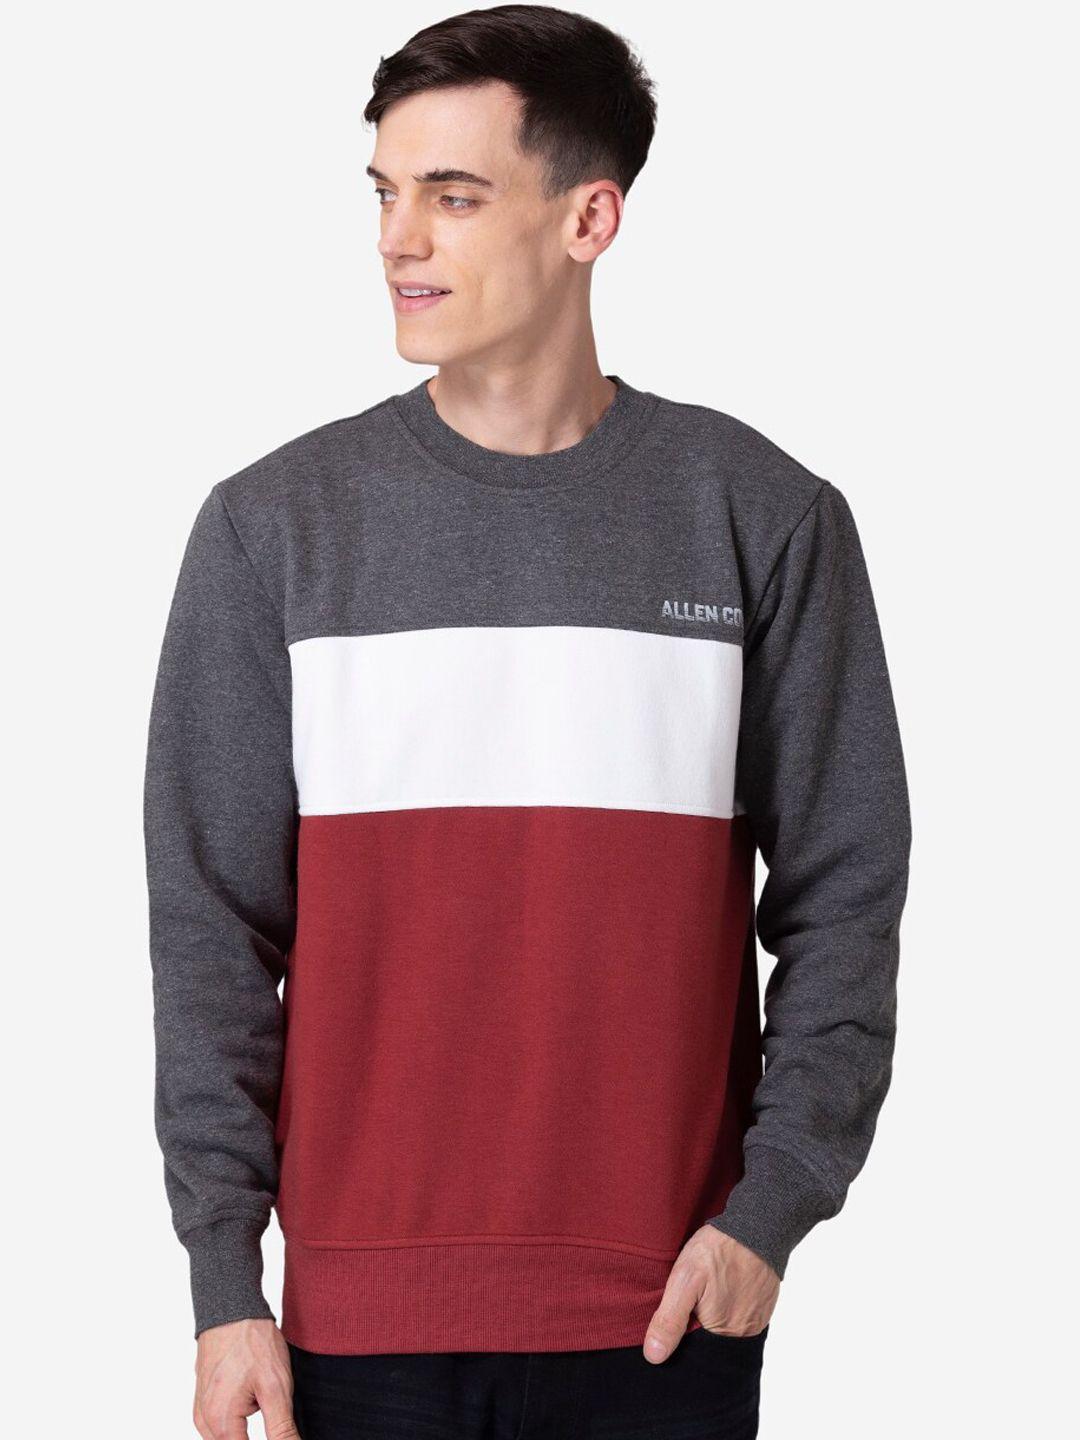 allen cooper men grey & red colourblocked sweatshirt